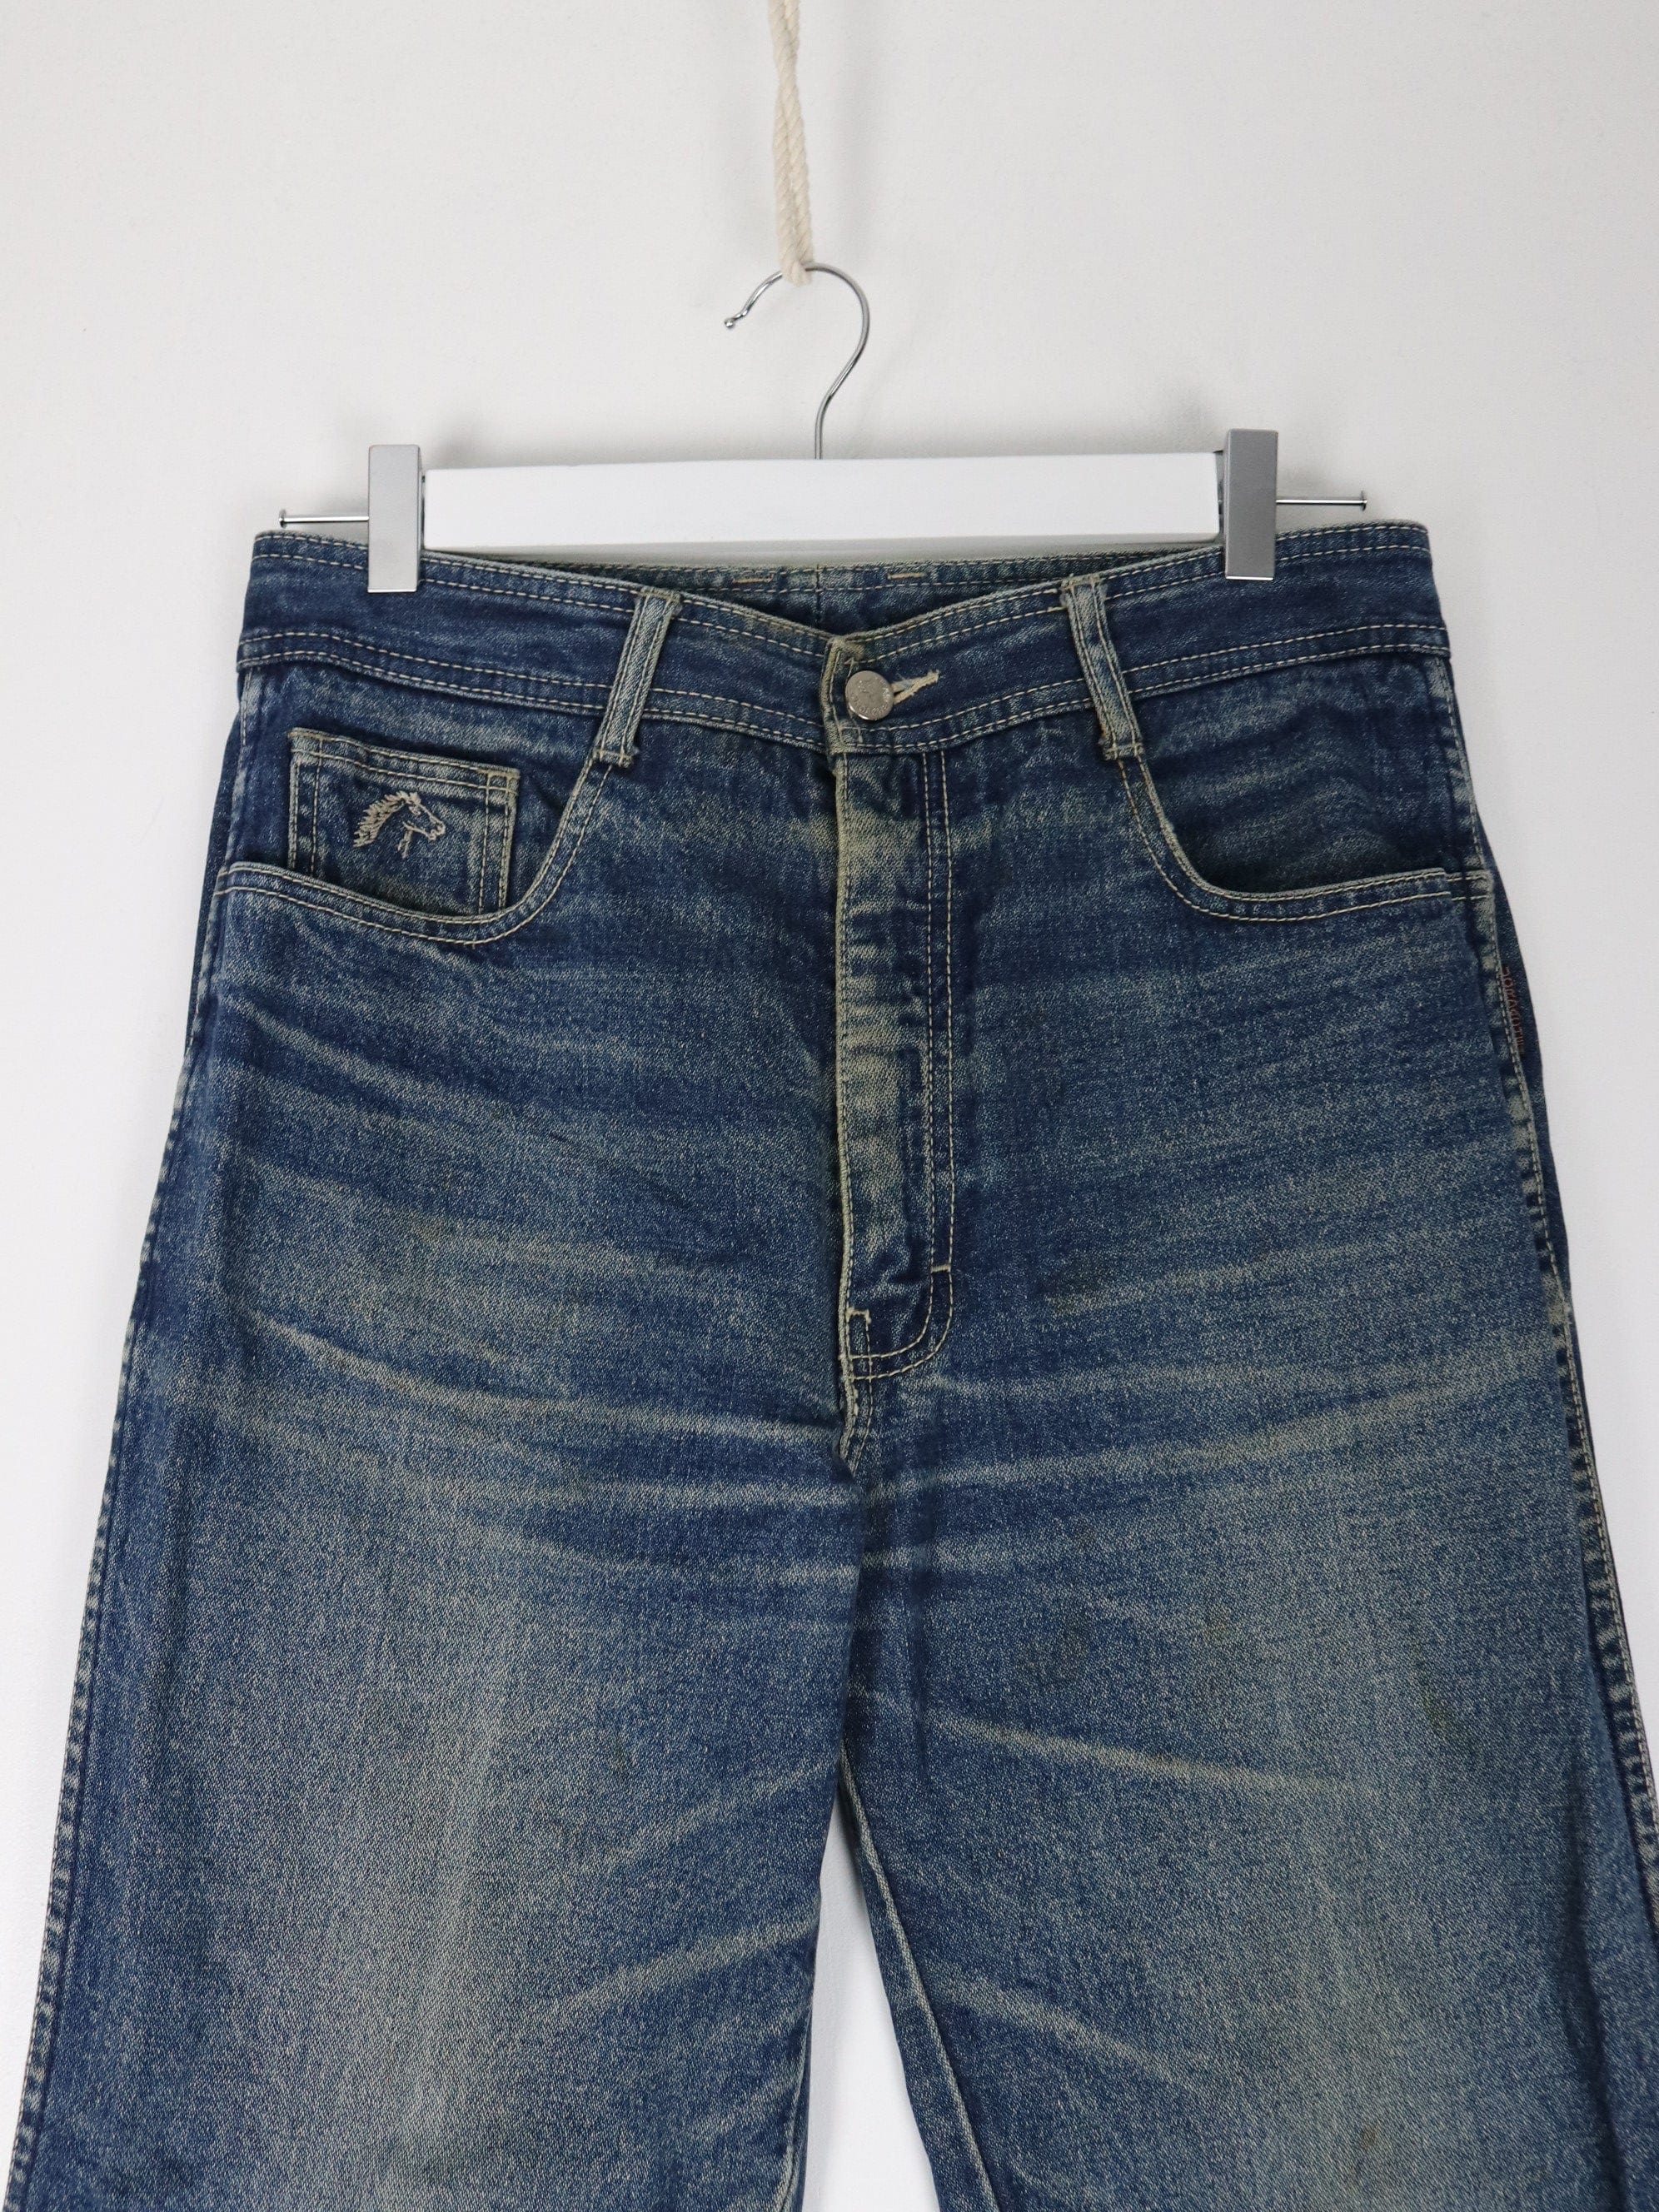 https://propervintagecanada.com/cdn/shop/files/other-jeans-vintage-jordache-pants-fits-mens-31-x-29-blue-denim-jeans-y2k-31694375157819.jpg?v=1701215405